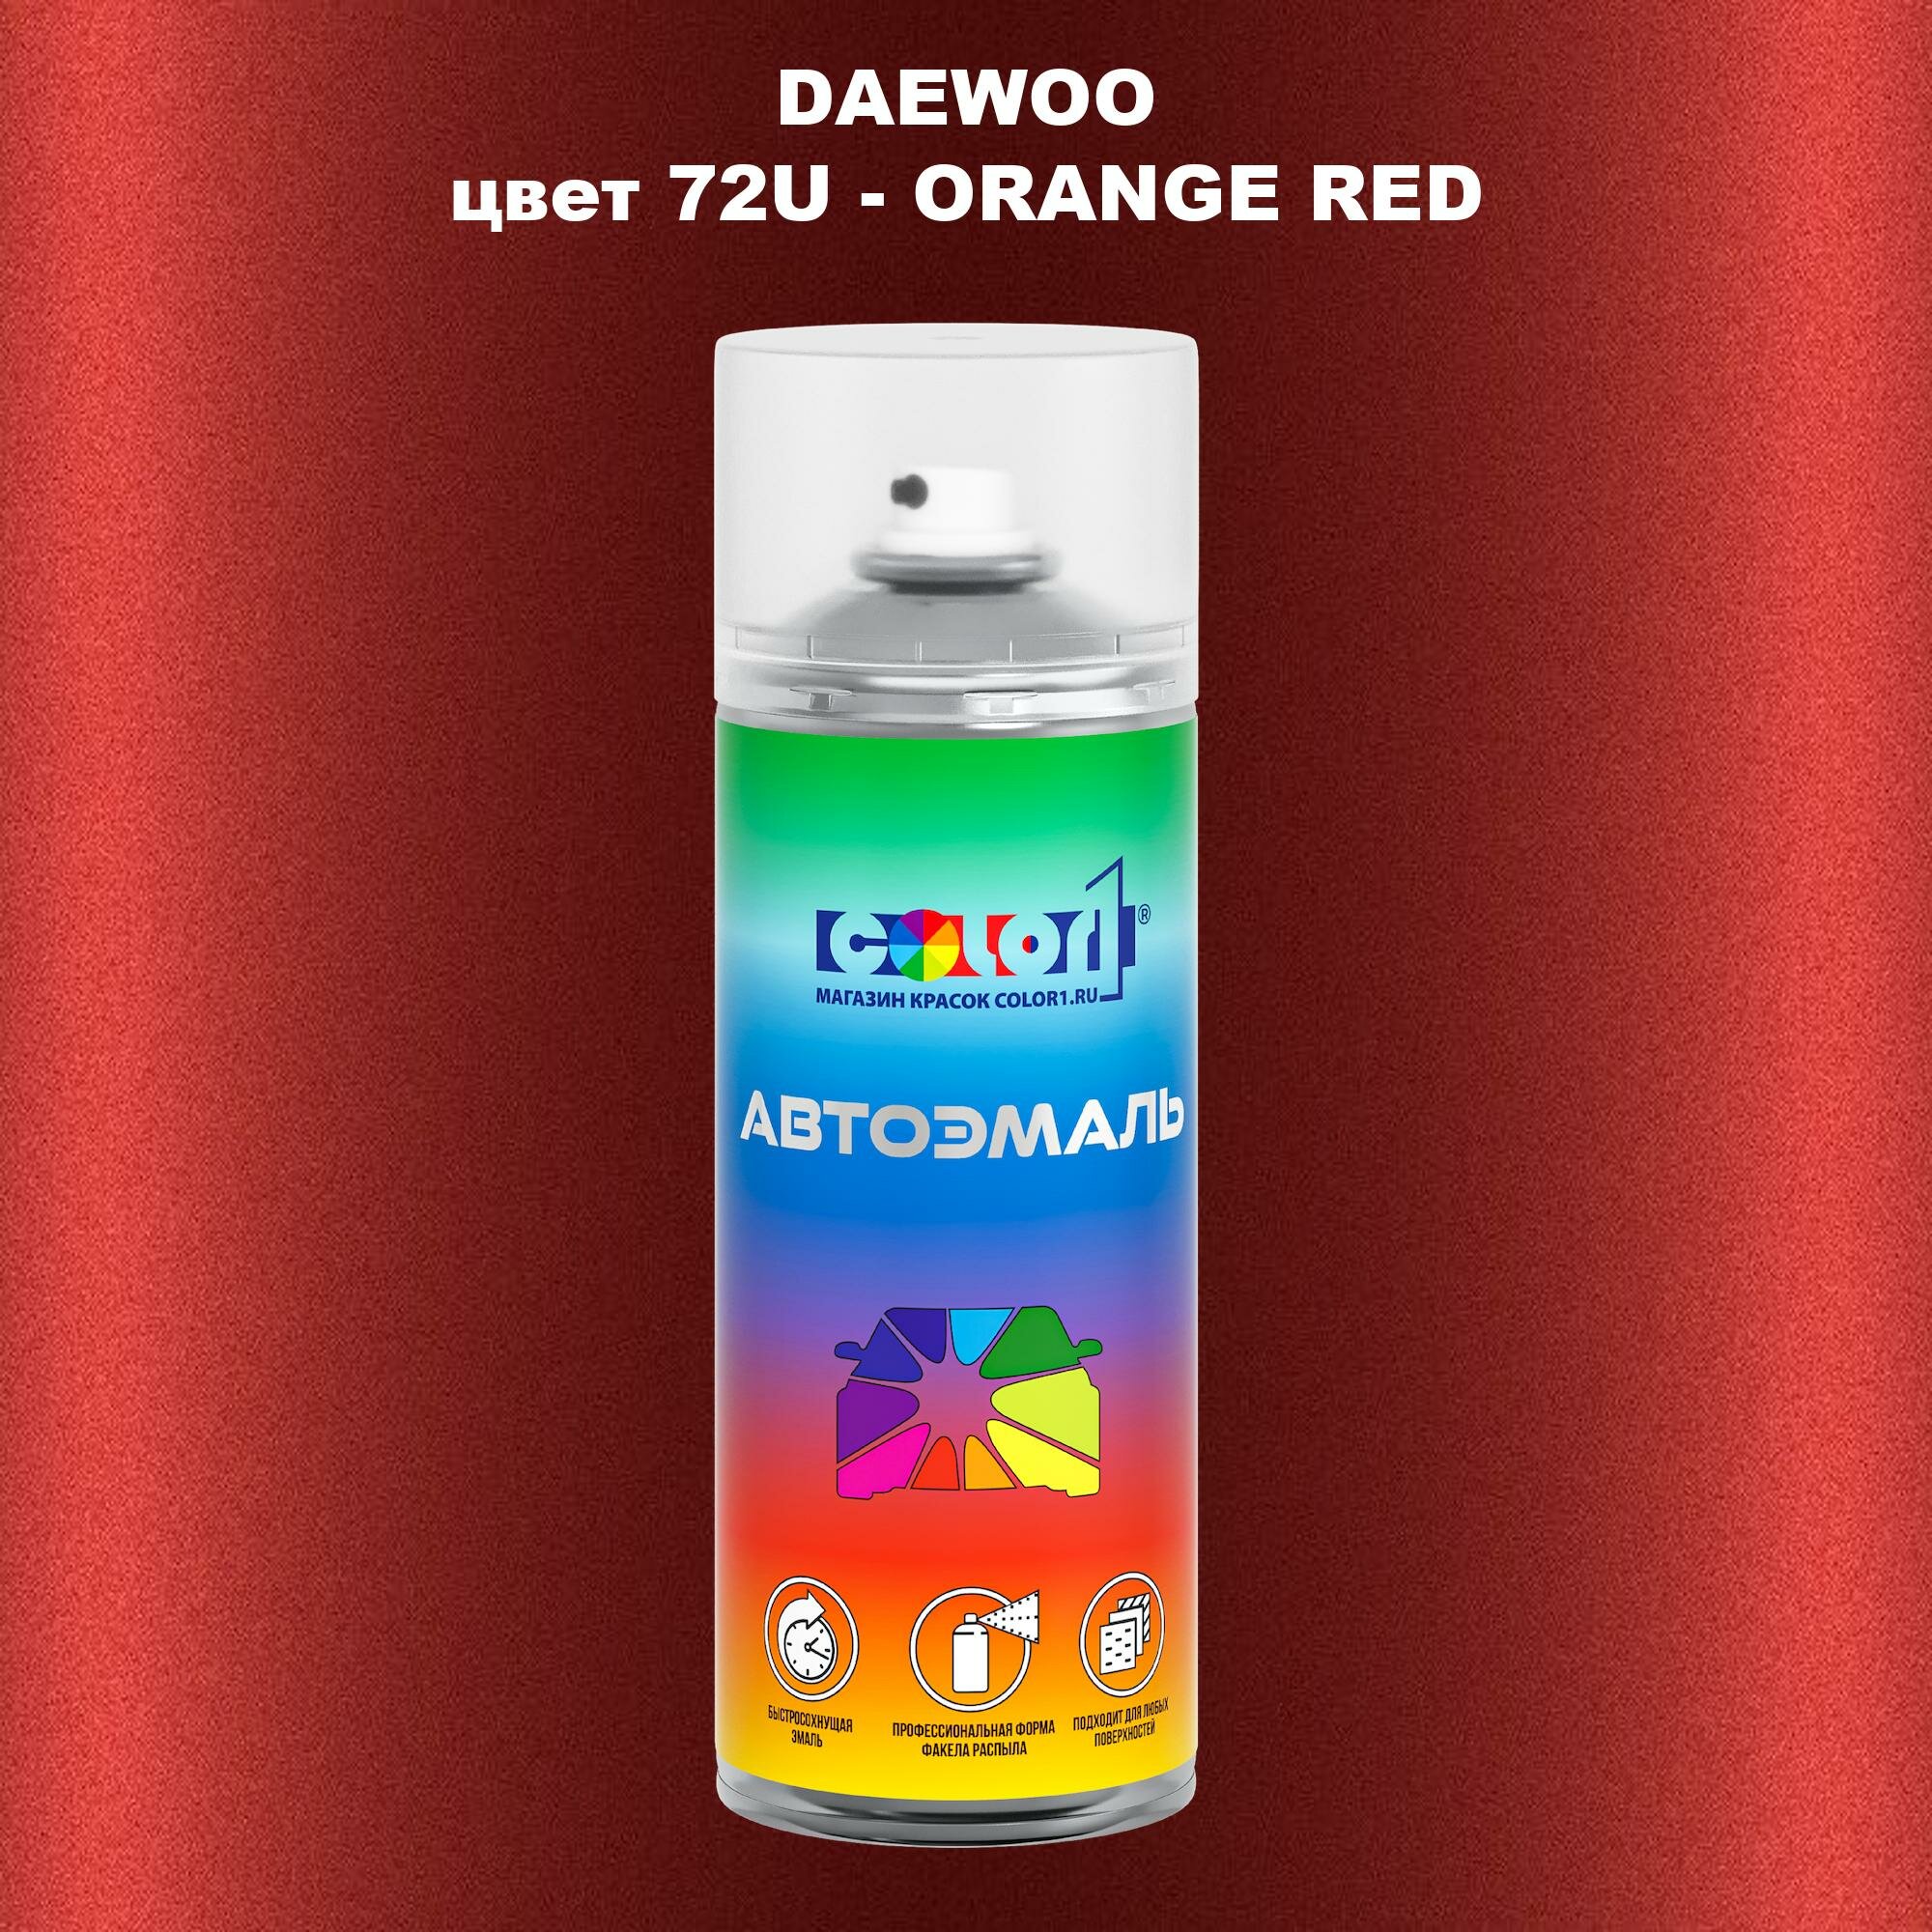 Аэрозольная краска COLOR1 для DAEWOO, цвет 72U - ORANGE RED